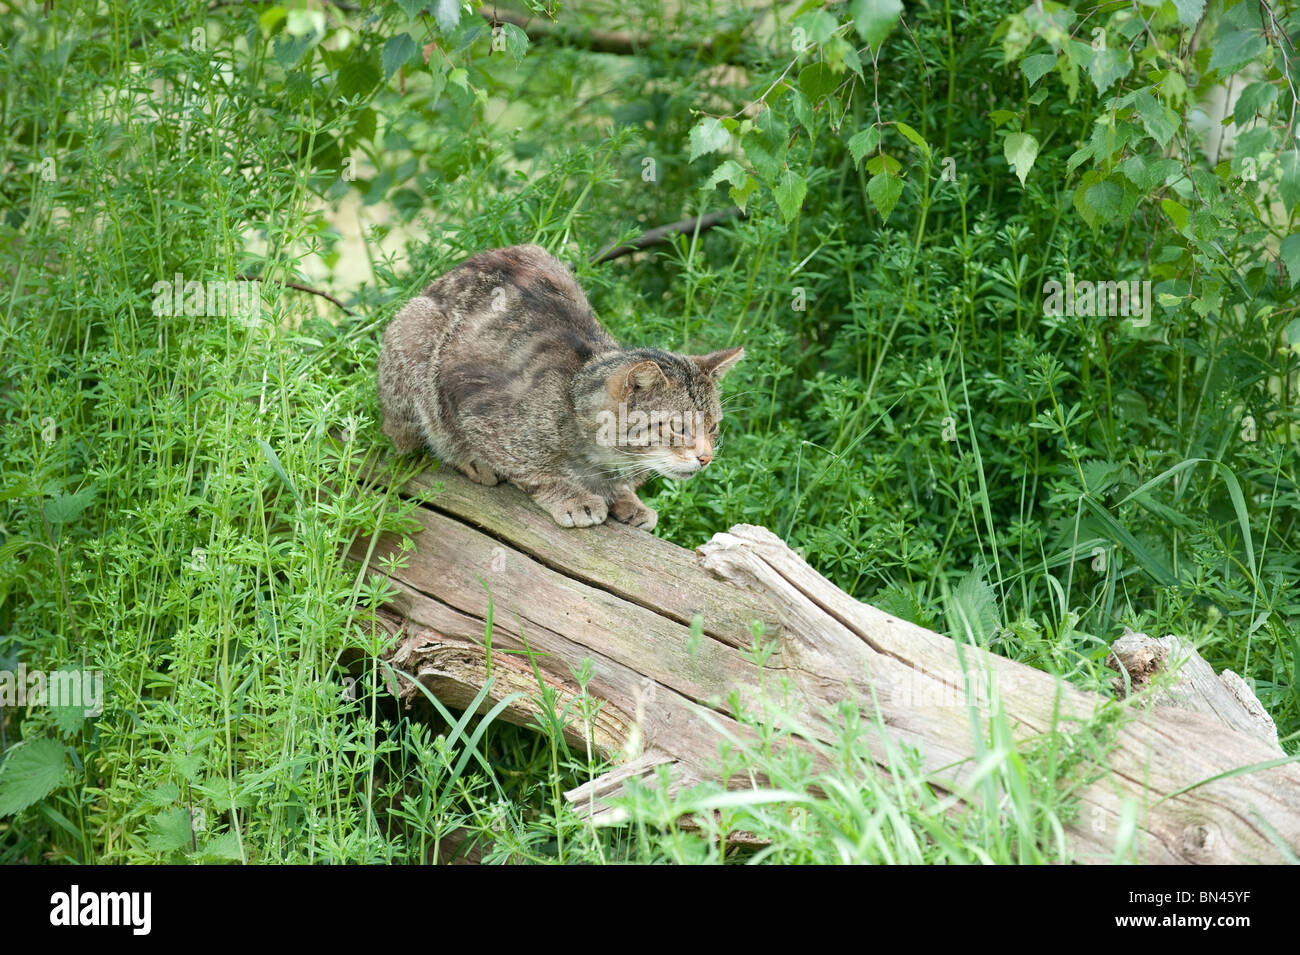 British gatto selvatico, ora trovato solo nel selvaggio in Scozia Foto Stock